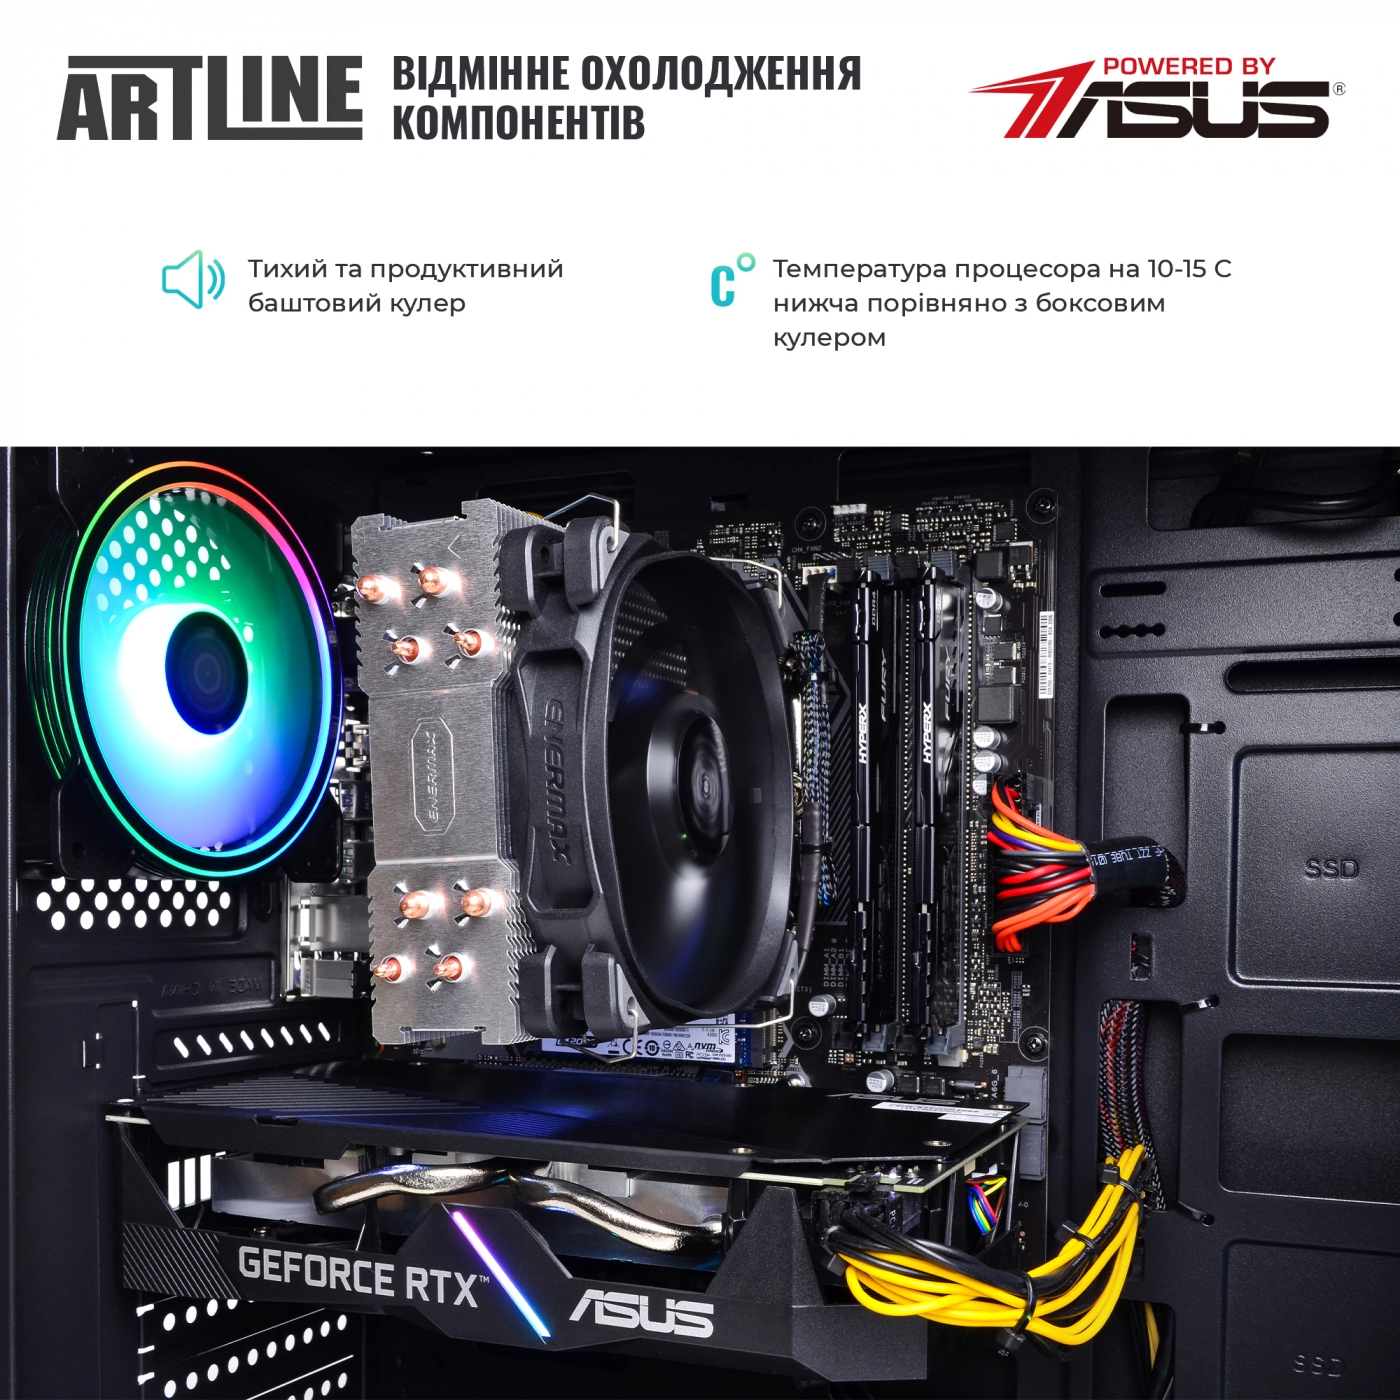 Купить Компьютер ARTLINE Gaming X75v17 - фото 7